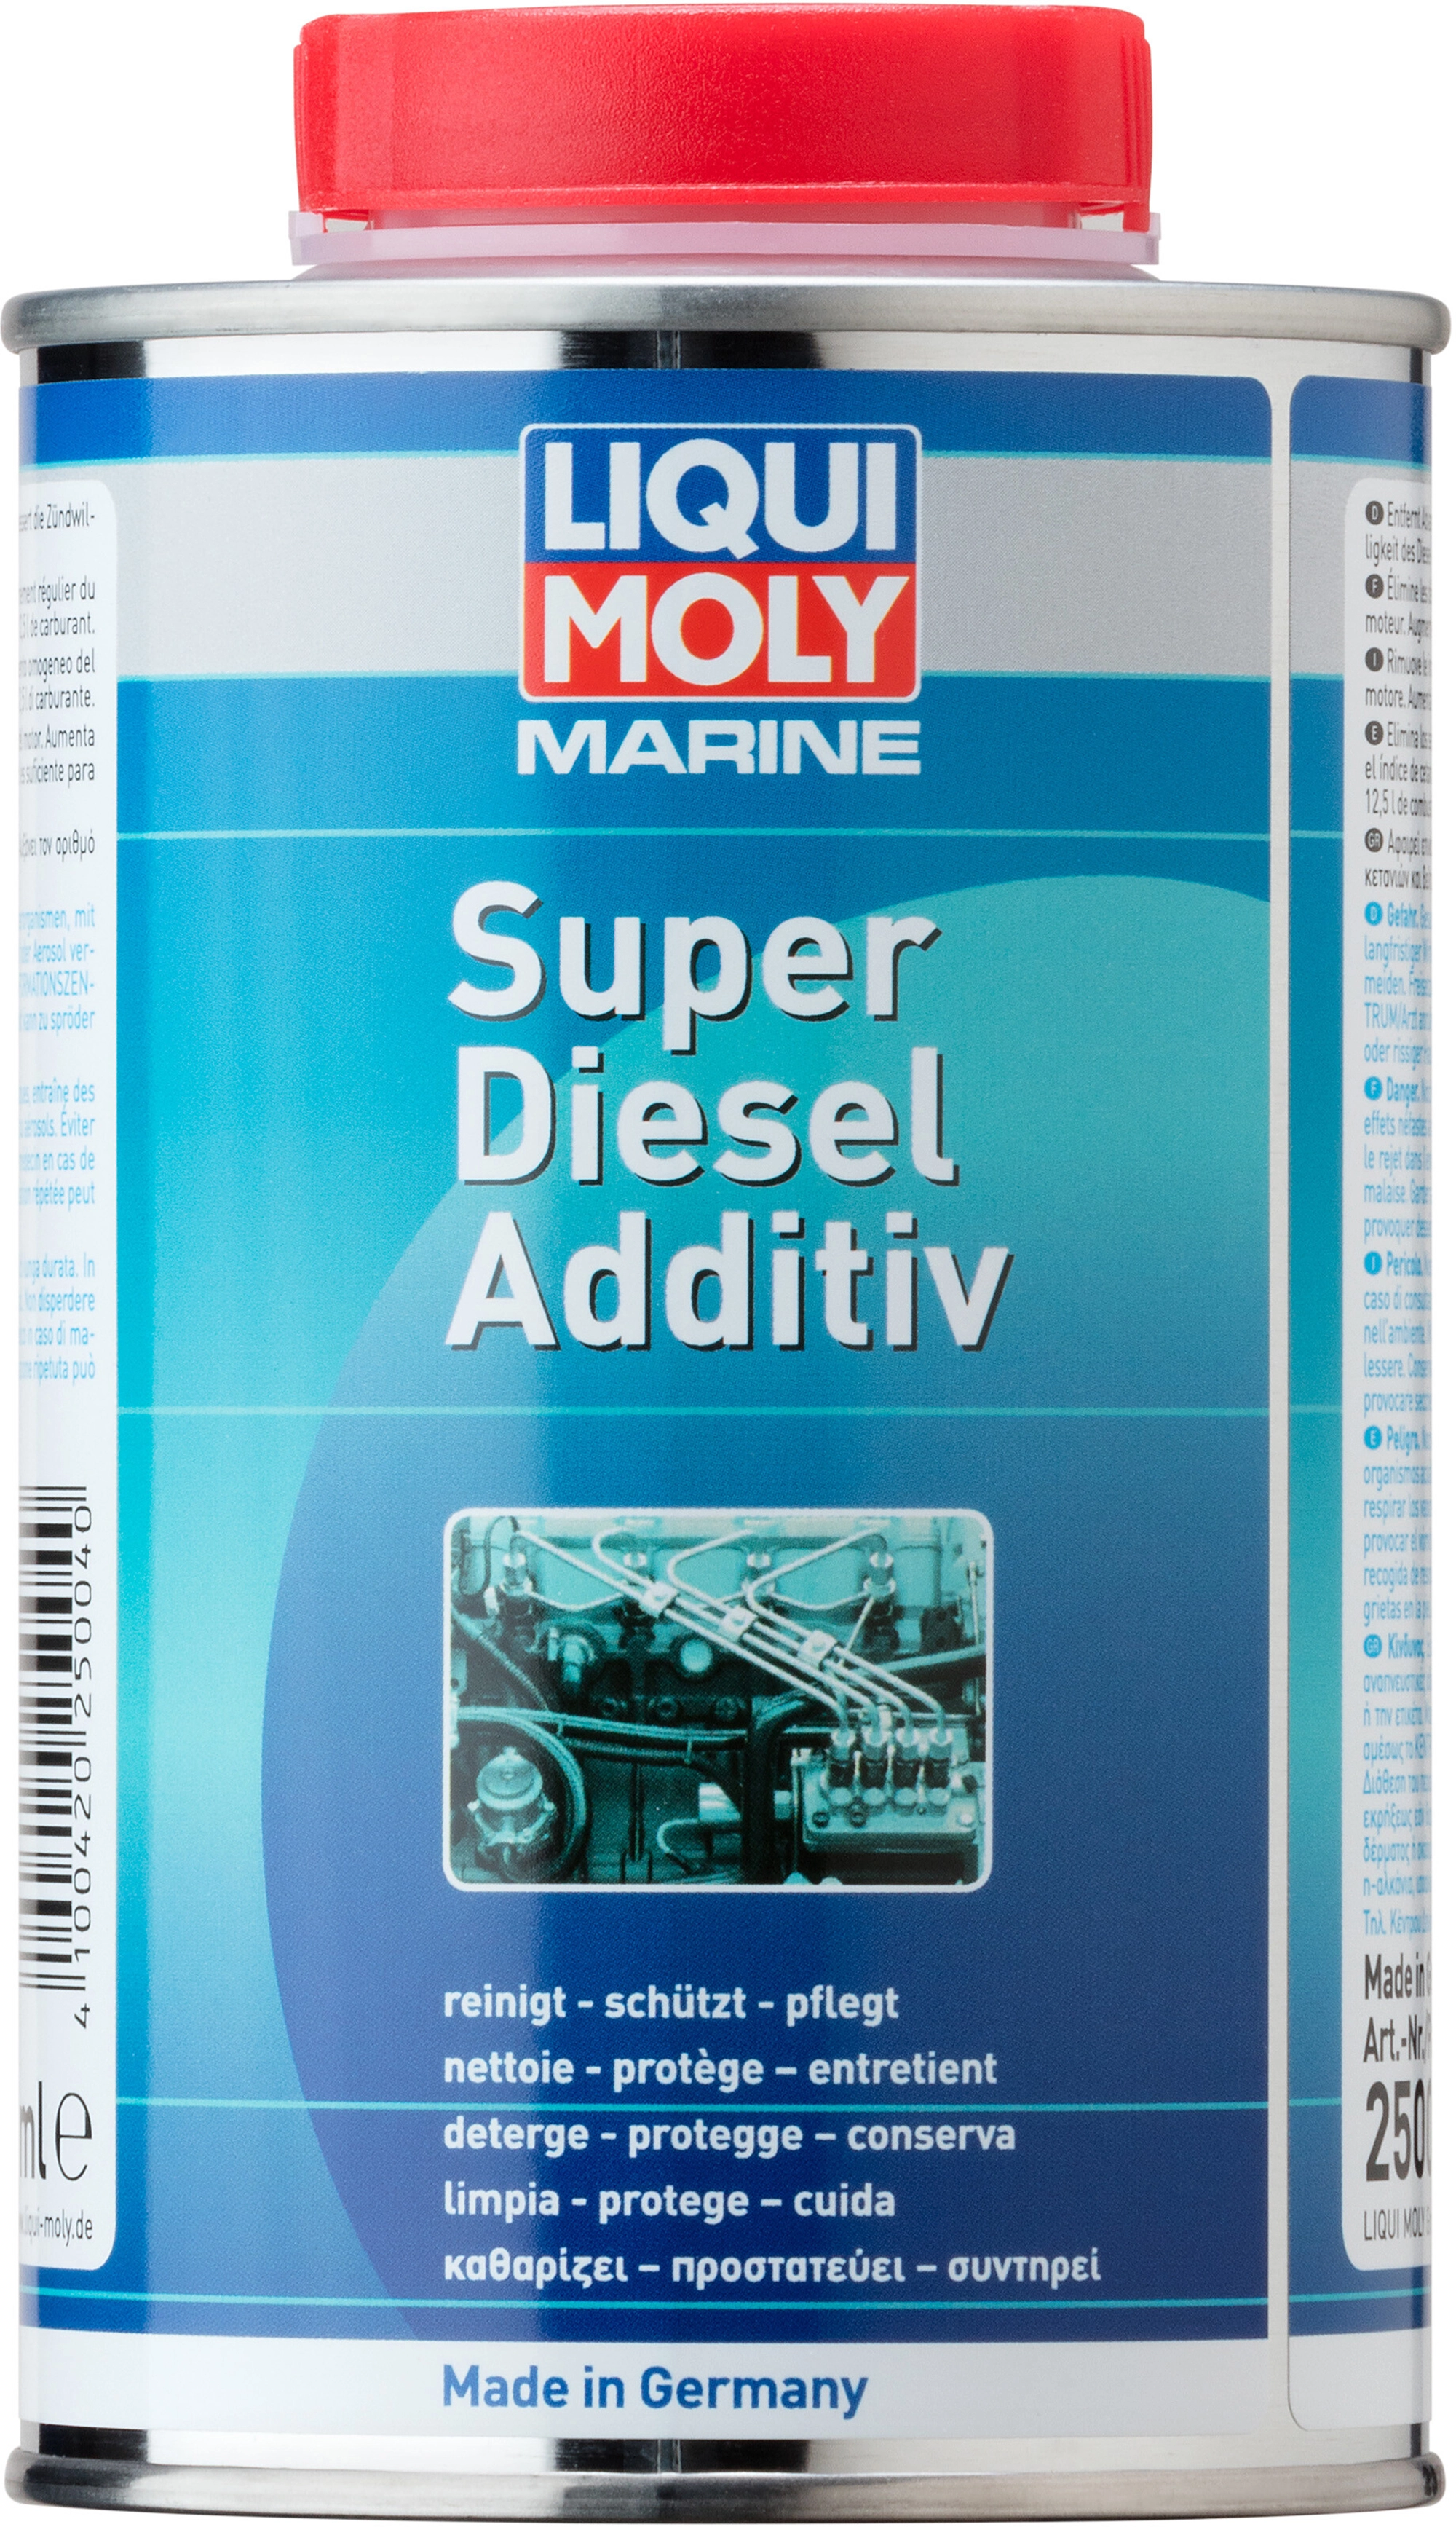 Liqui Moly Marine Super Diesel Additiv 500 ml kaufen bei OBI